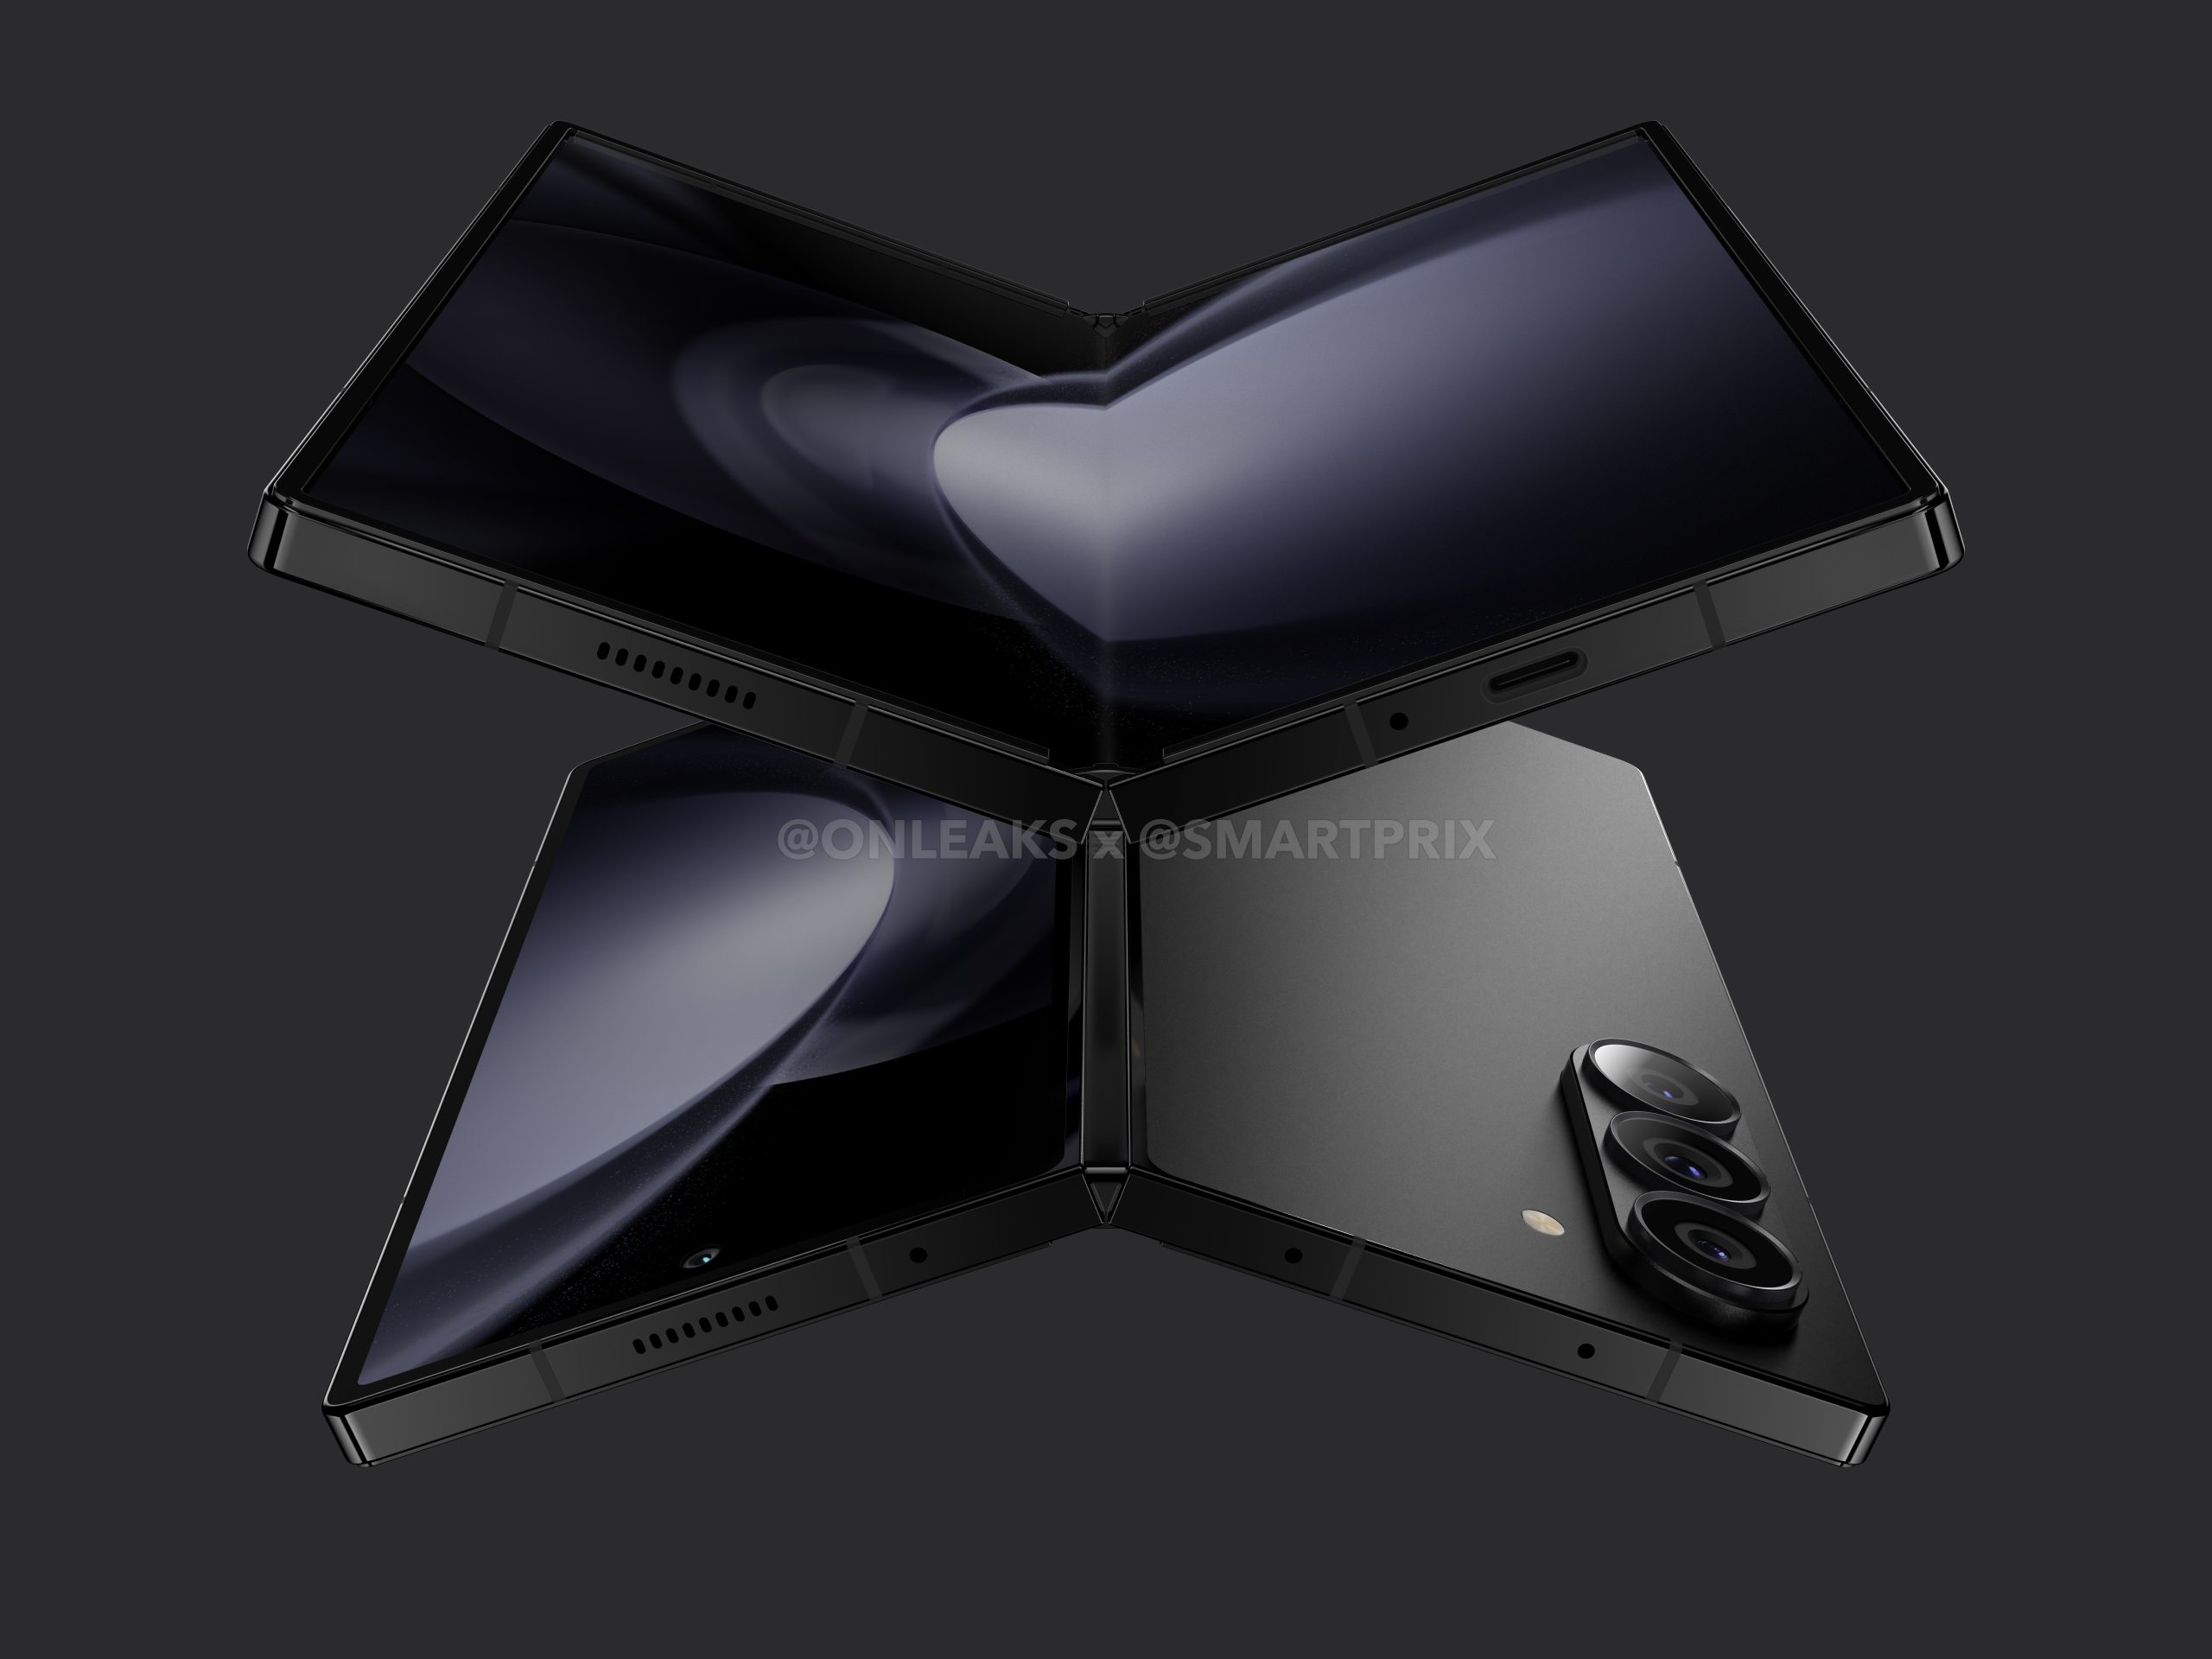 Un insider ha revelado cómo será el smartphone plegable Galaxy Fold 6 de Samsung